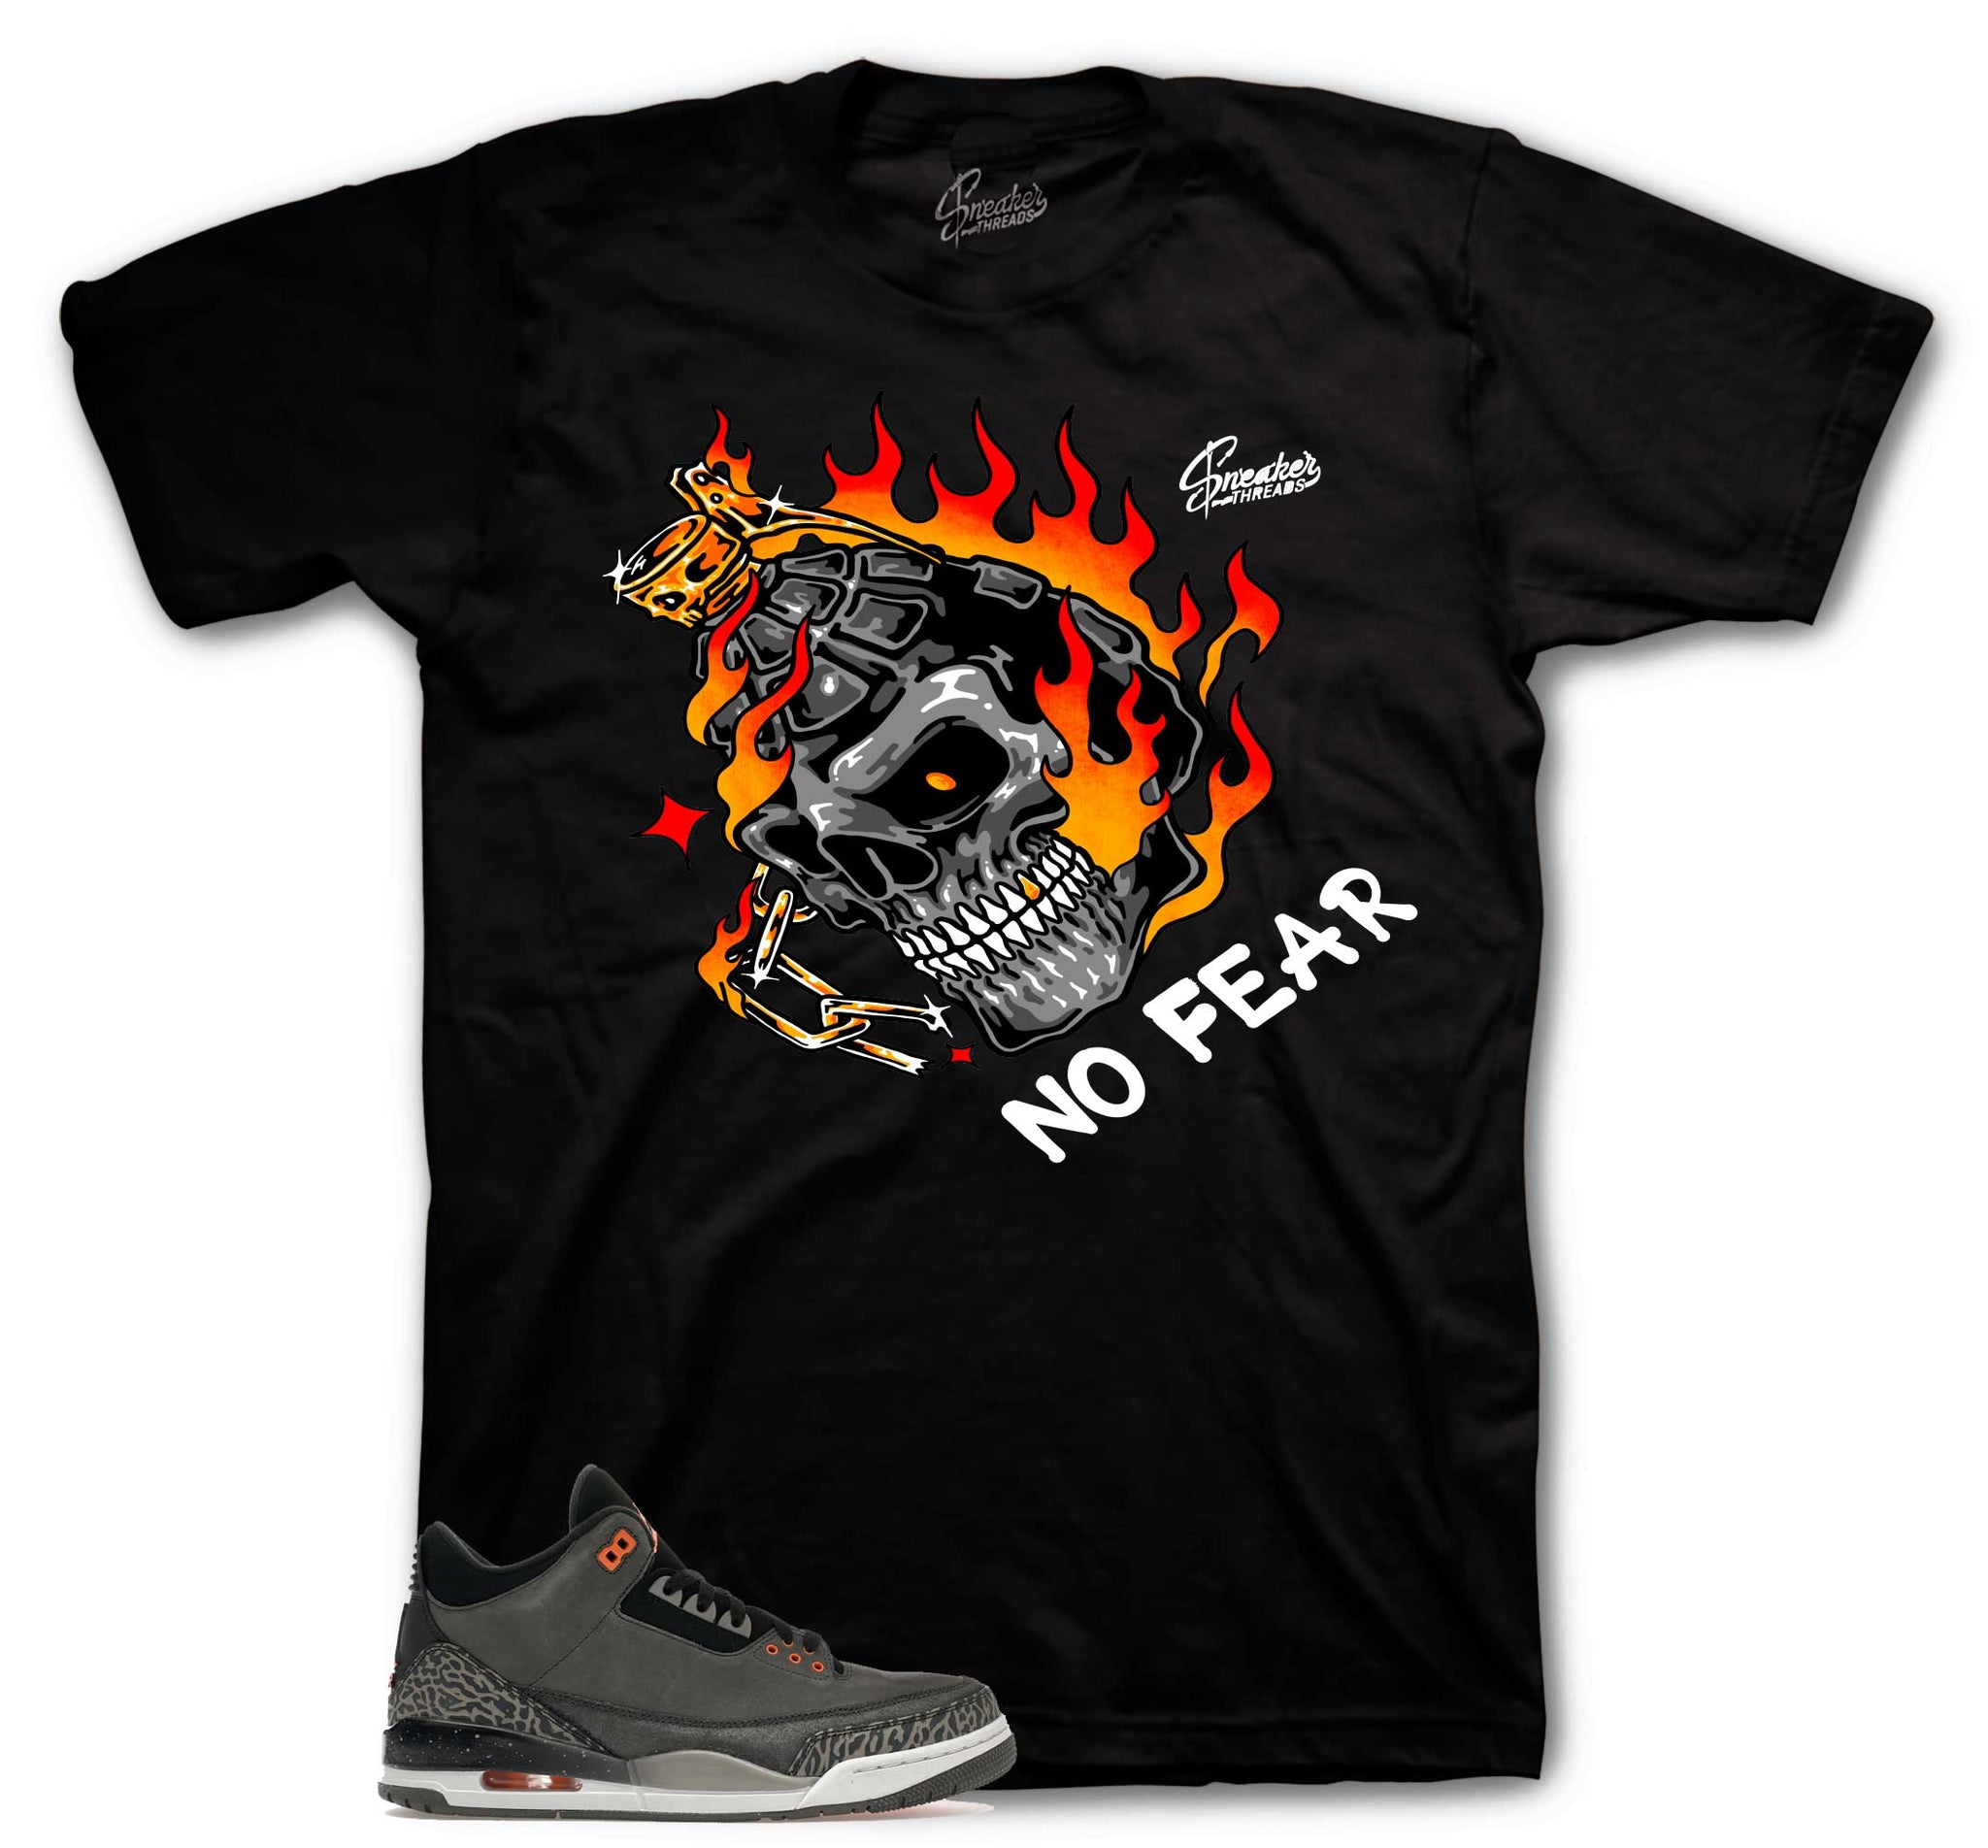 Retro 3 Fear Shirt - Fear No One - Black